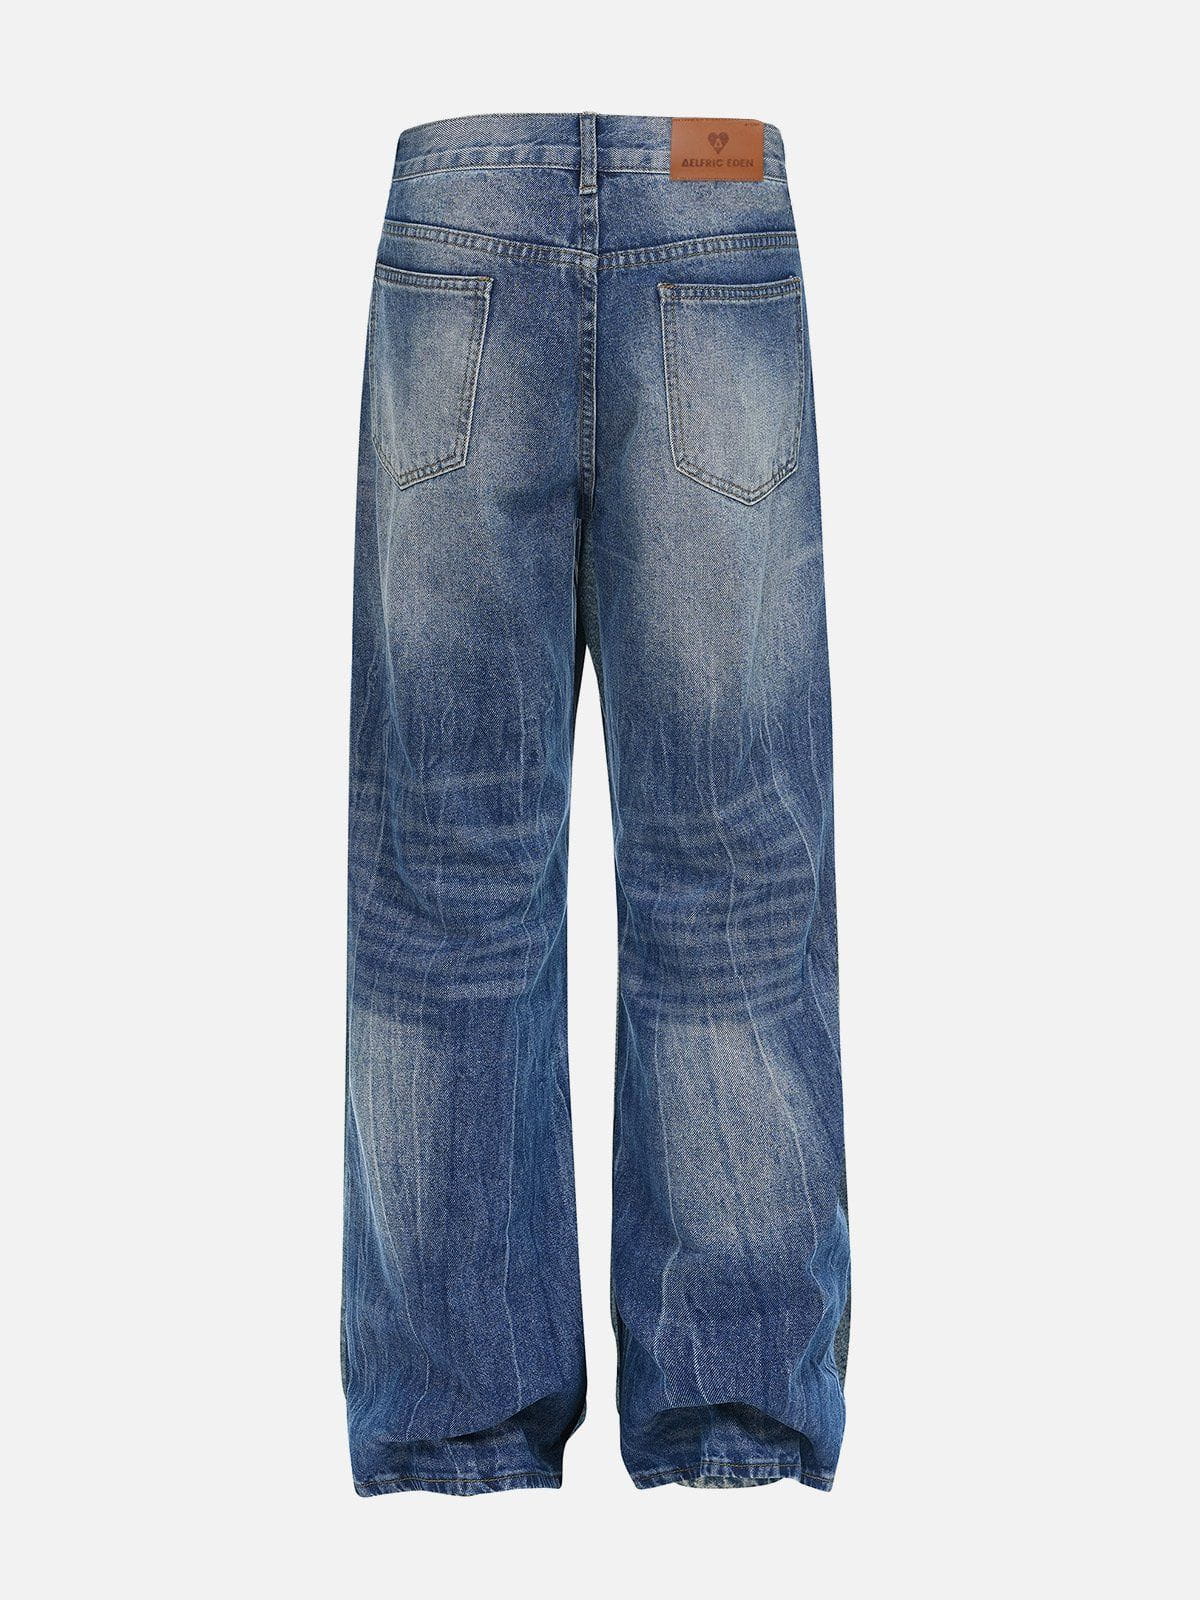 Aelfric Eden Vintage Washed Loose Jeans